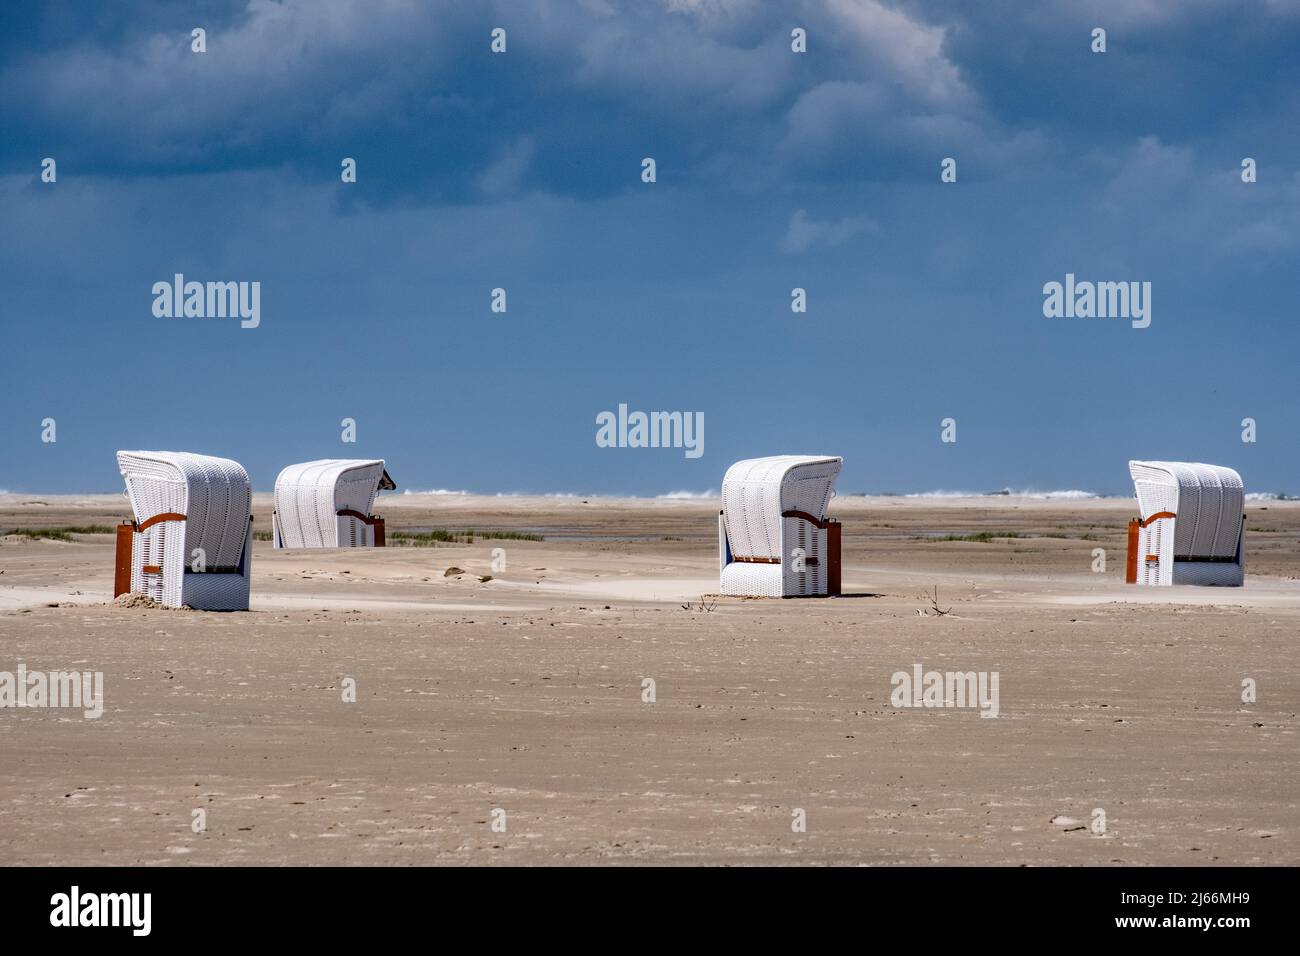 Impressionen von der Insel Borkum - Nordstrand beim Dünenbudje mit vier weißen Strandkörben. Foto Stock